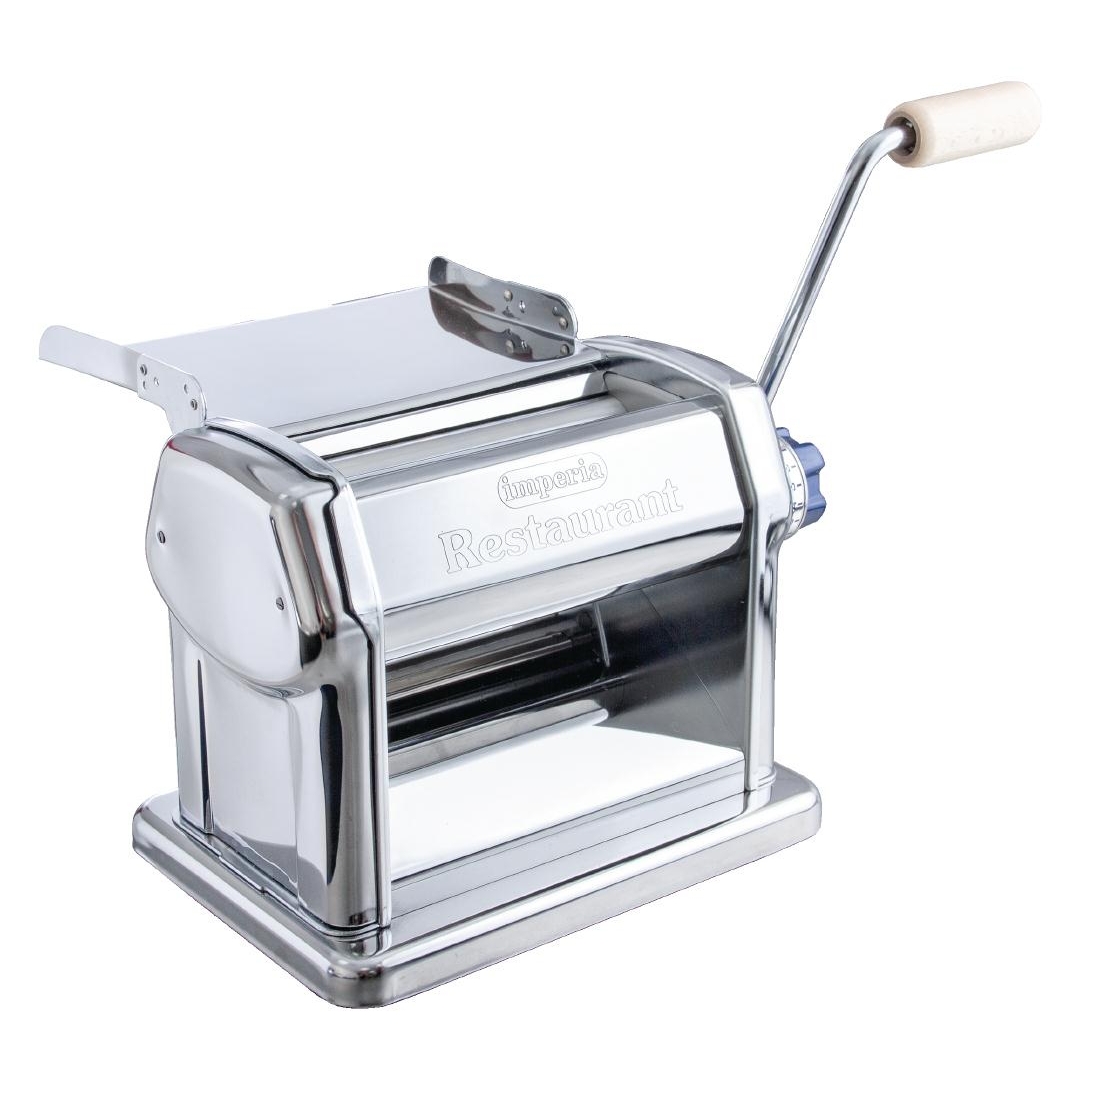 Imperia Manual Pasta Machine